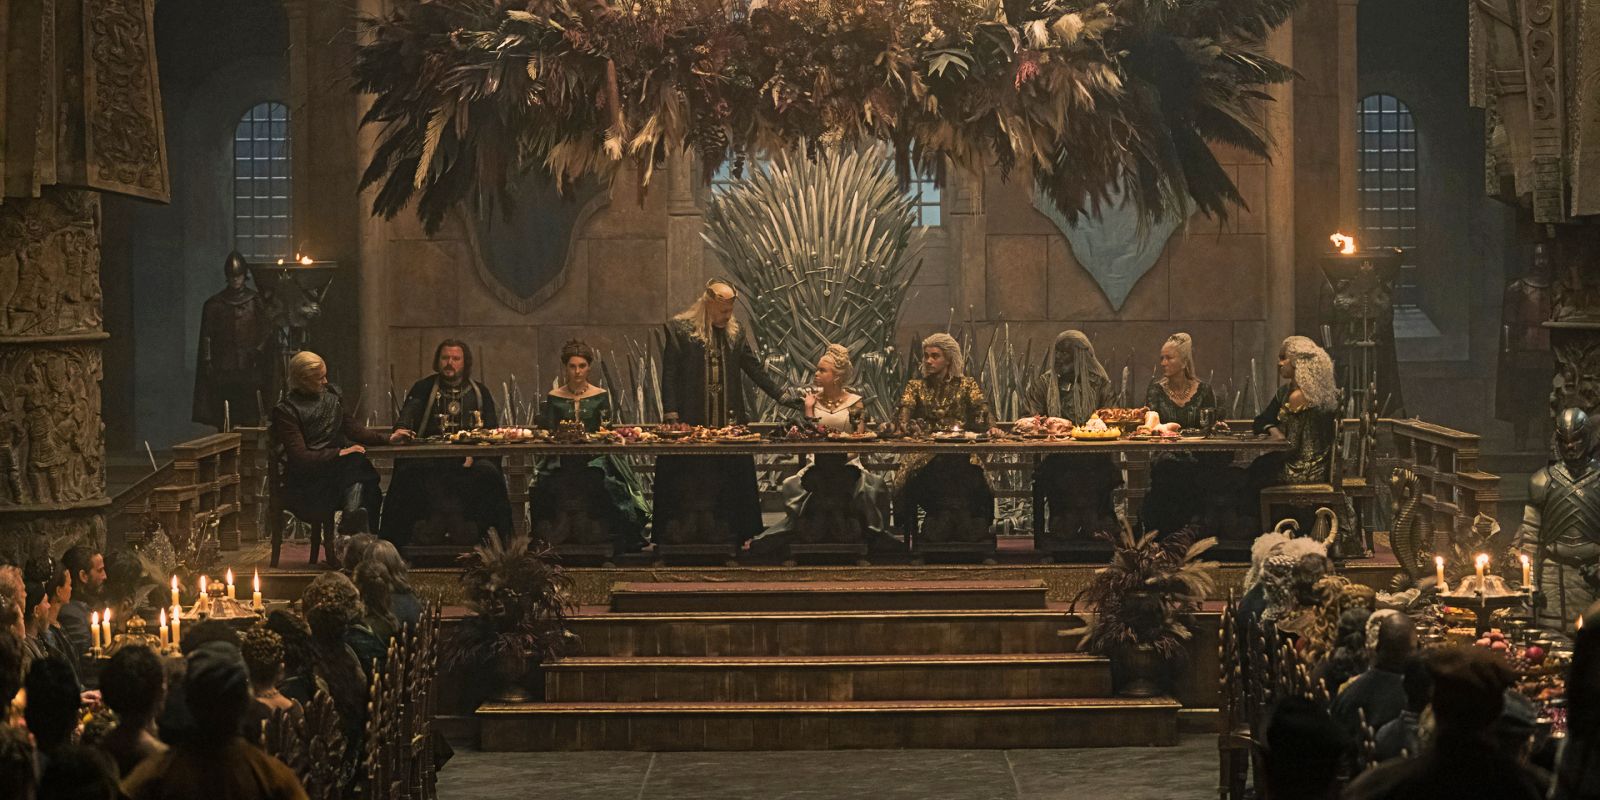 O casamento de Rhaenyra e Laenor em House of the Dragon, com Daemon, Lyionel, Alicent, Corlys, Rhaenys e Laena